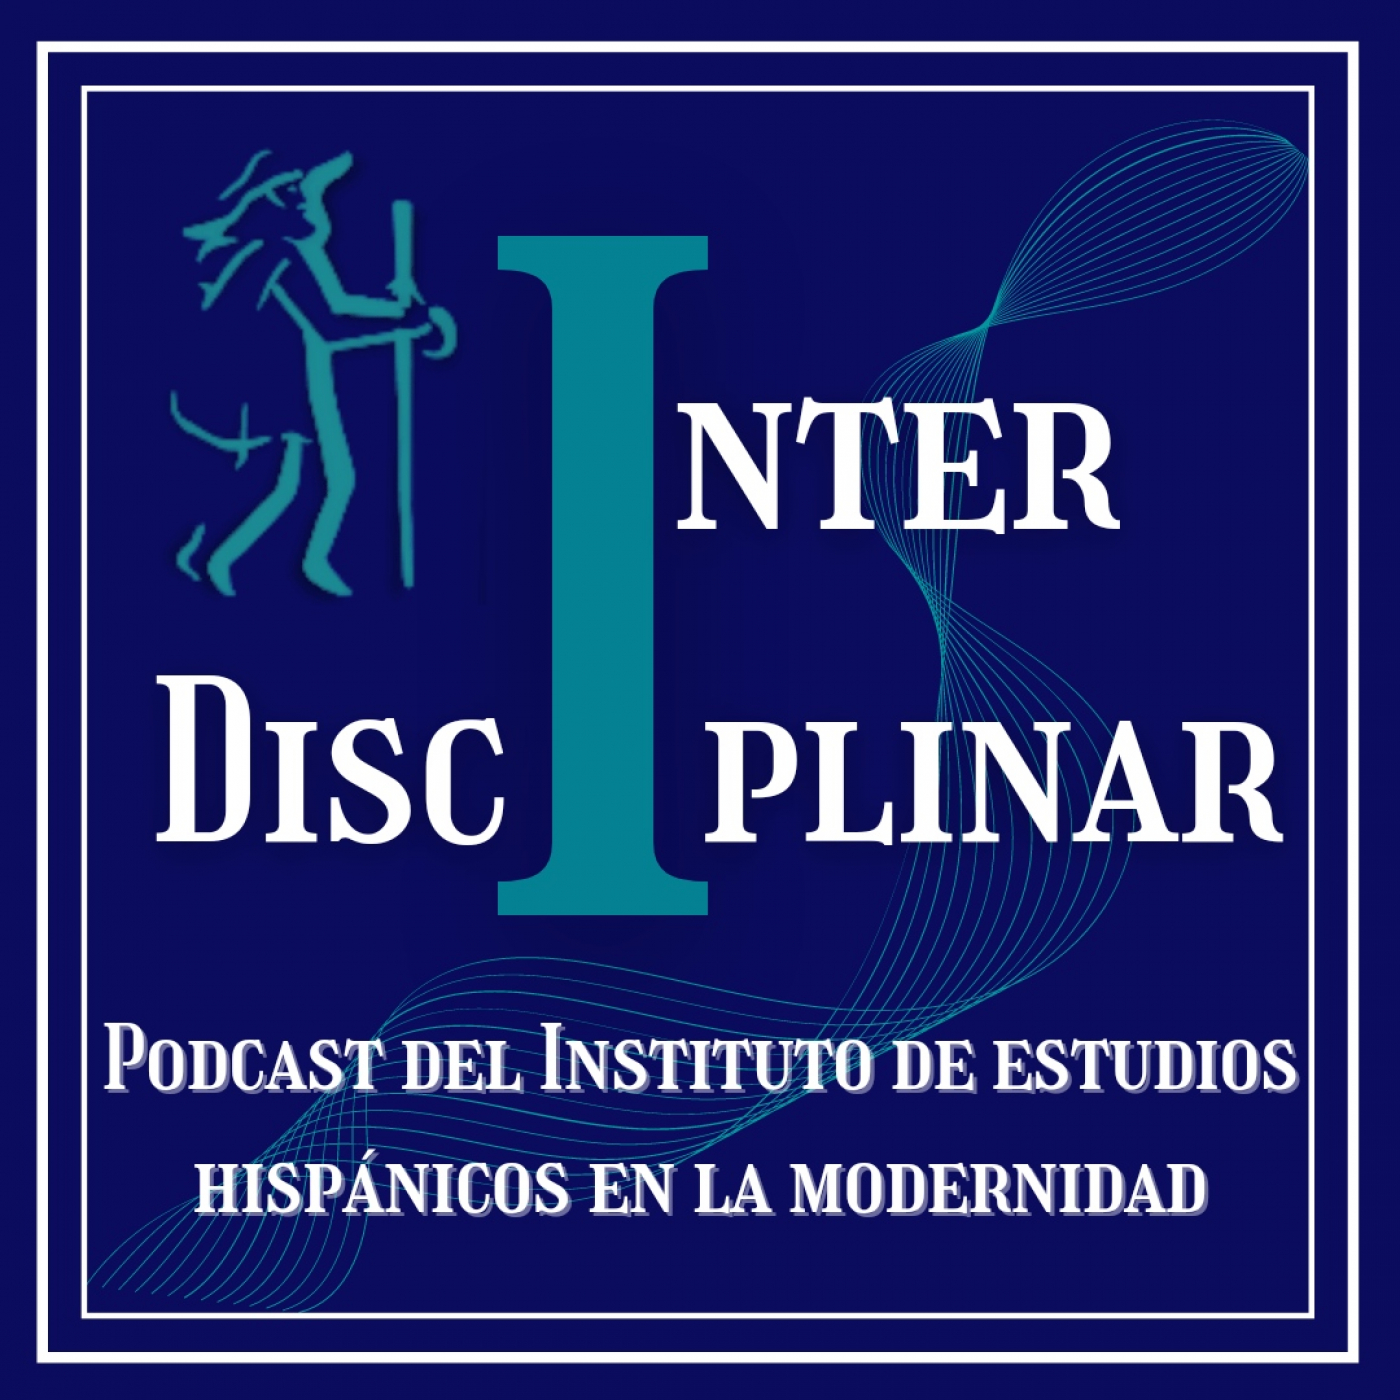 Interdisciplinar. Podcast del IEHM